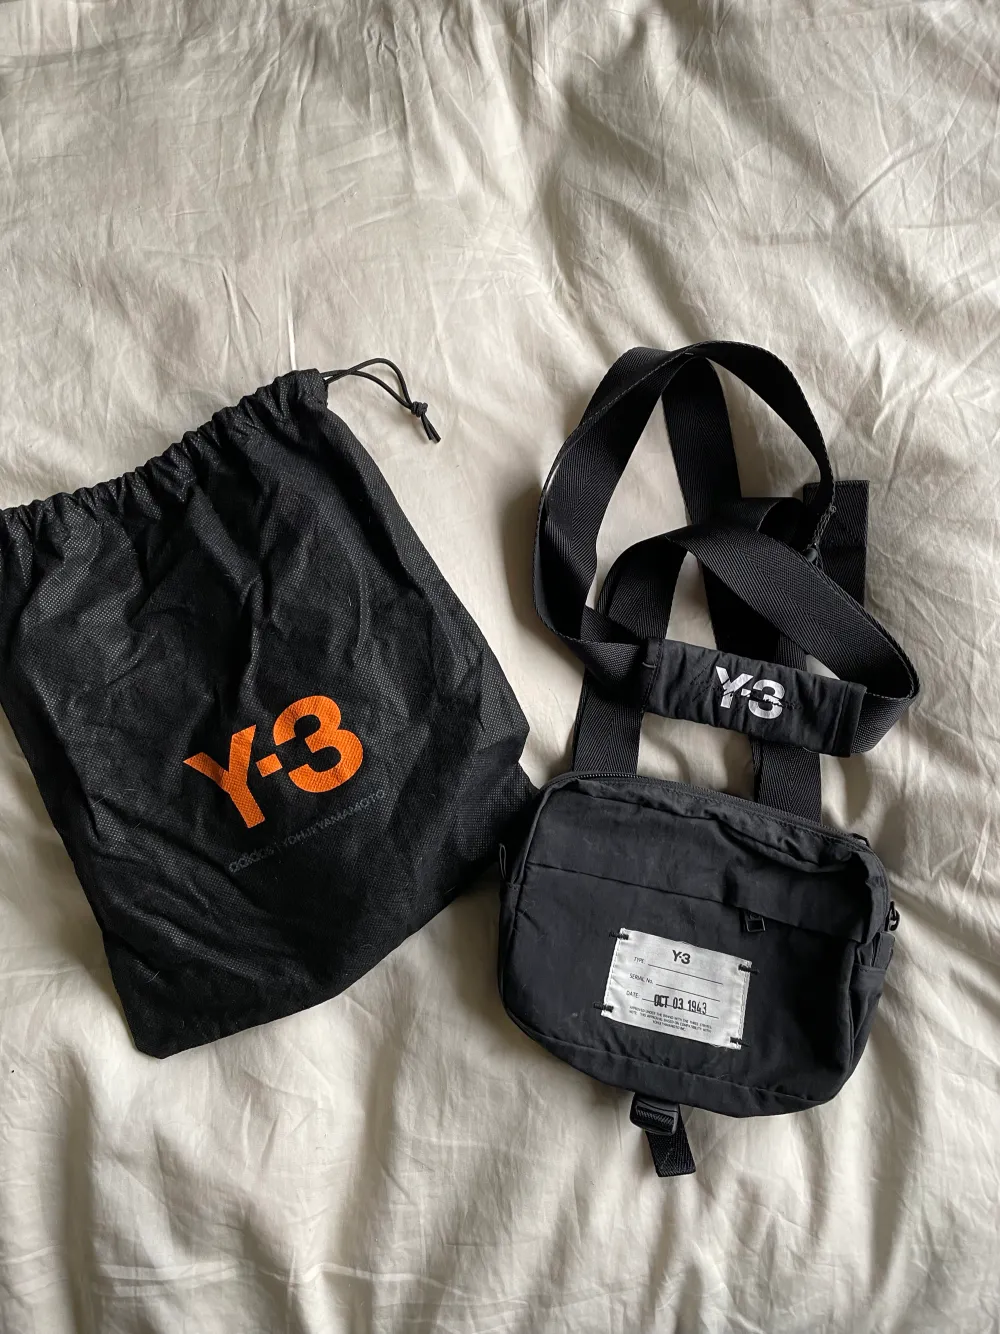 Fin Yohji väska i svart. Fin kvalite och inte mycket användning!   Mvh. Väskor.